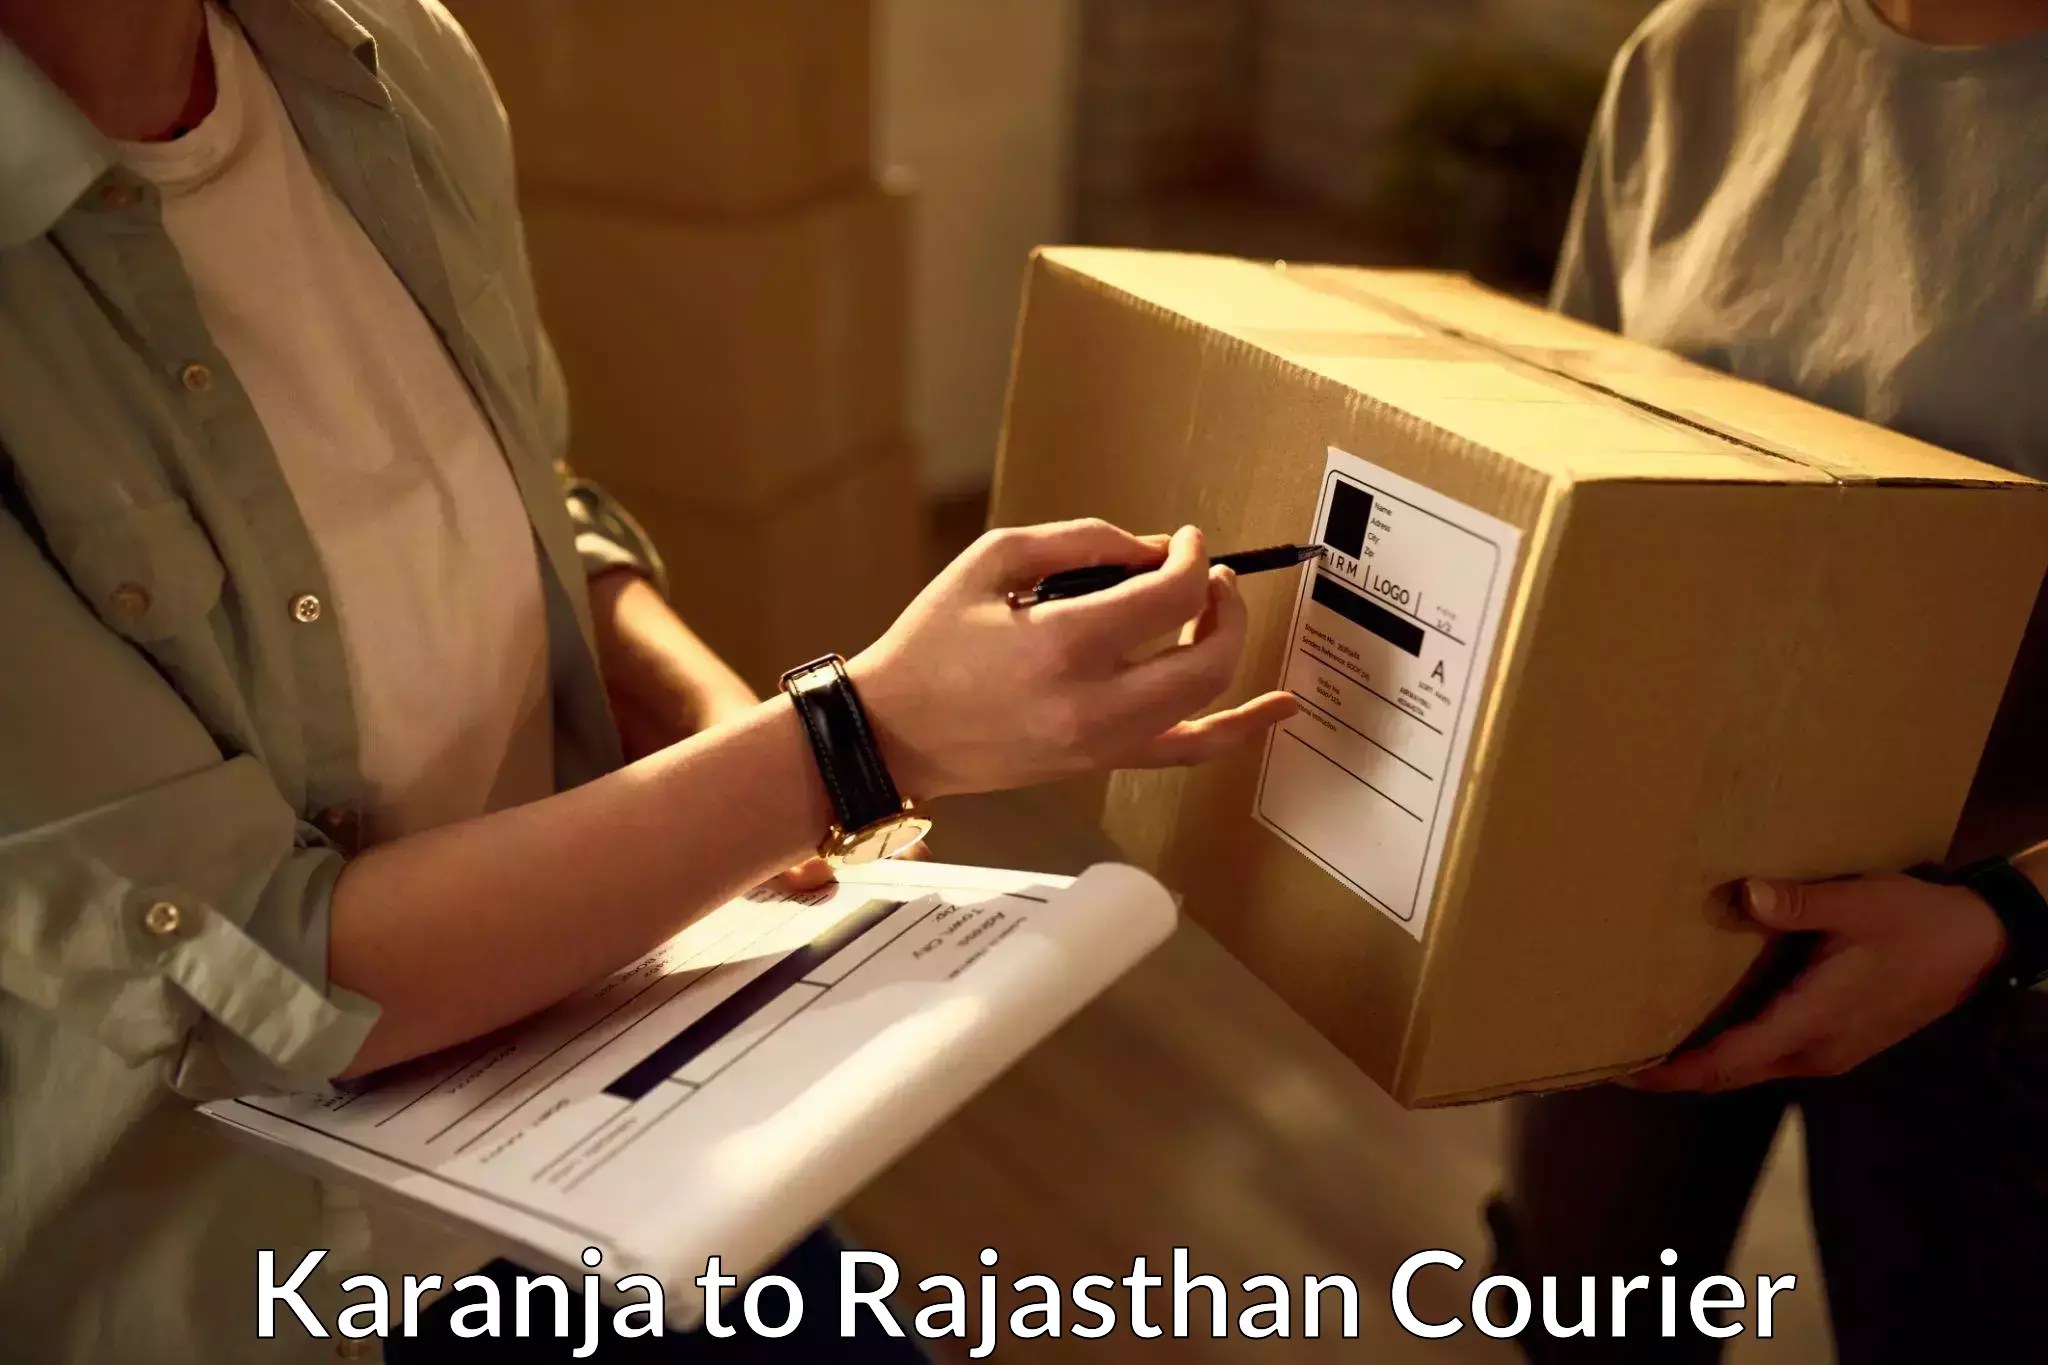 Seamless shipping service Karanja to Rajasthan